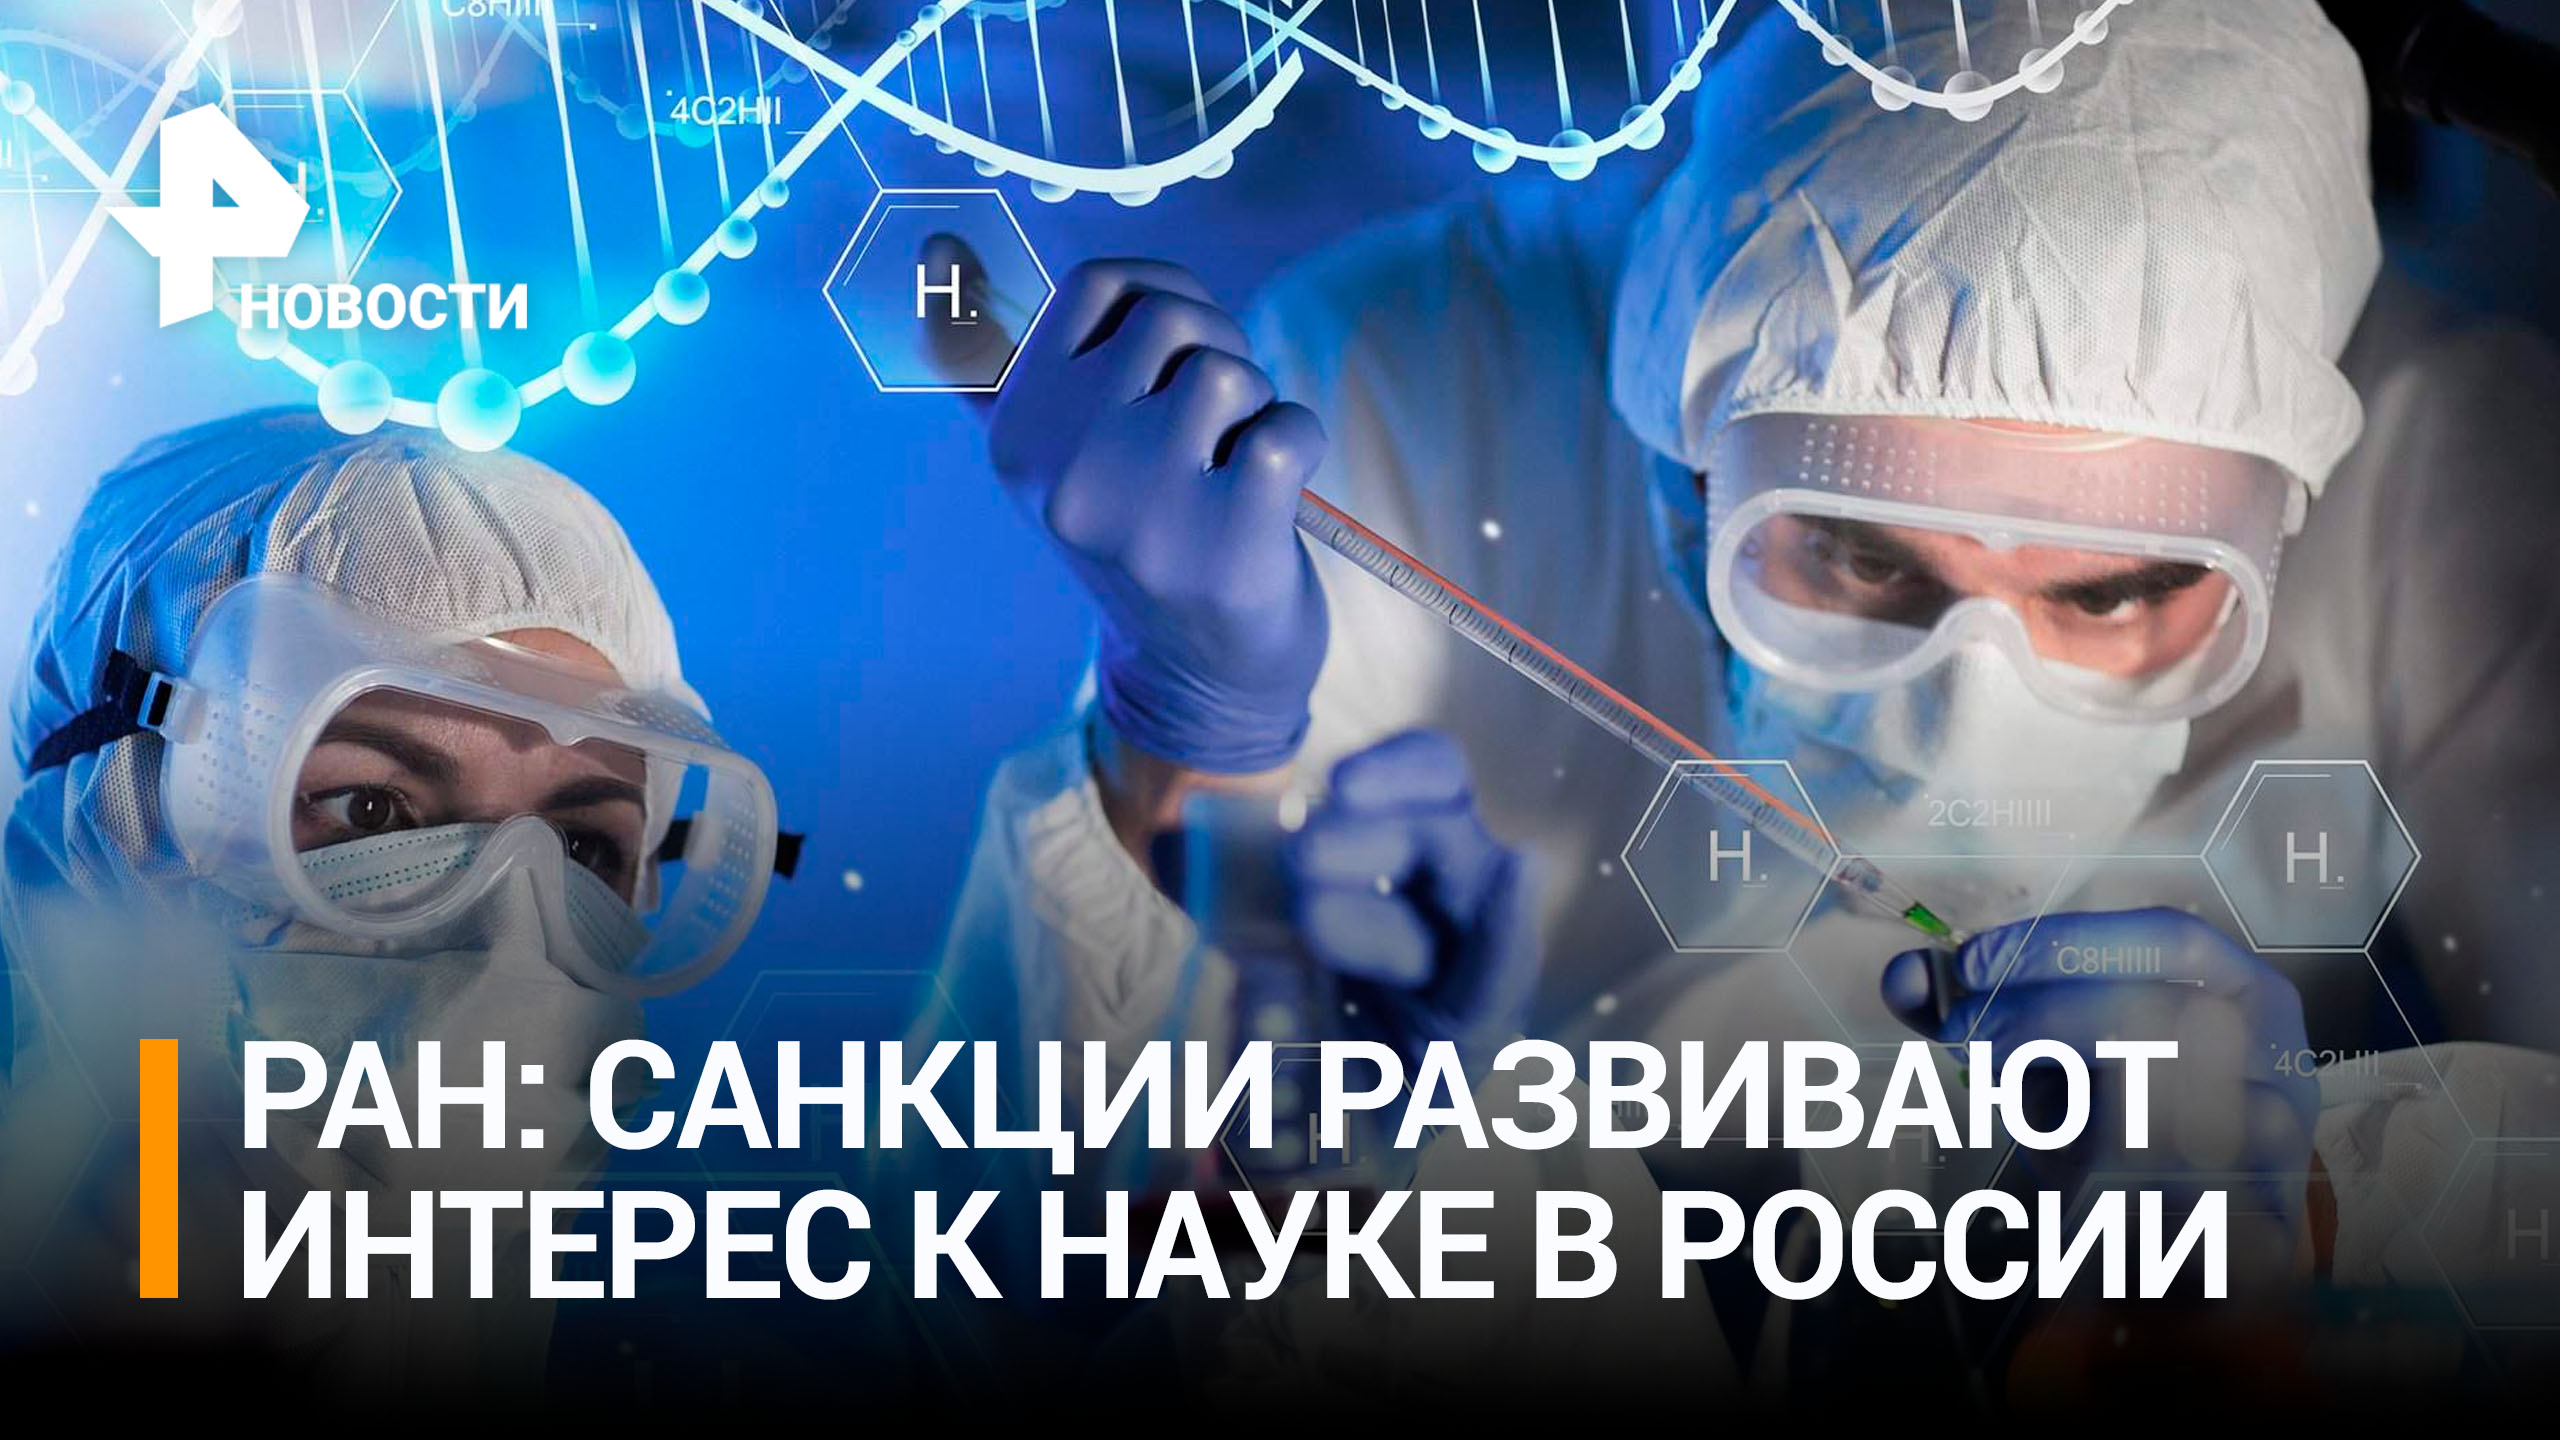 Санкции привели к росту интереса к российской науке, заявили в РАН / РЕН Новости